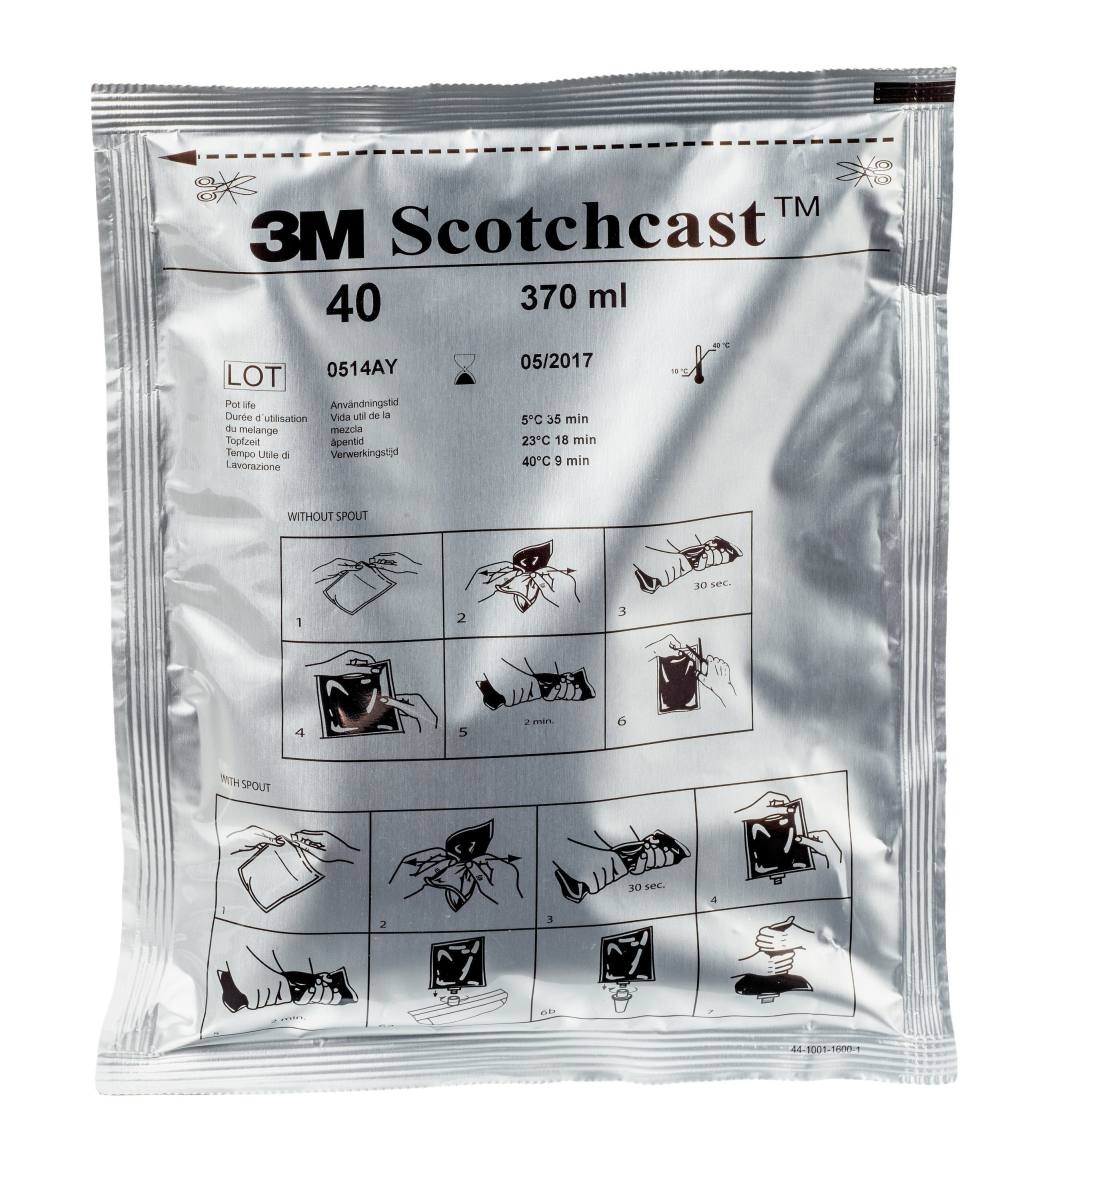 3M Scotchcast 40-C-B, resina poliuretanica per cavi, sistema GMG a 2 componenti, misura C, 370 ml, confezione sfusa